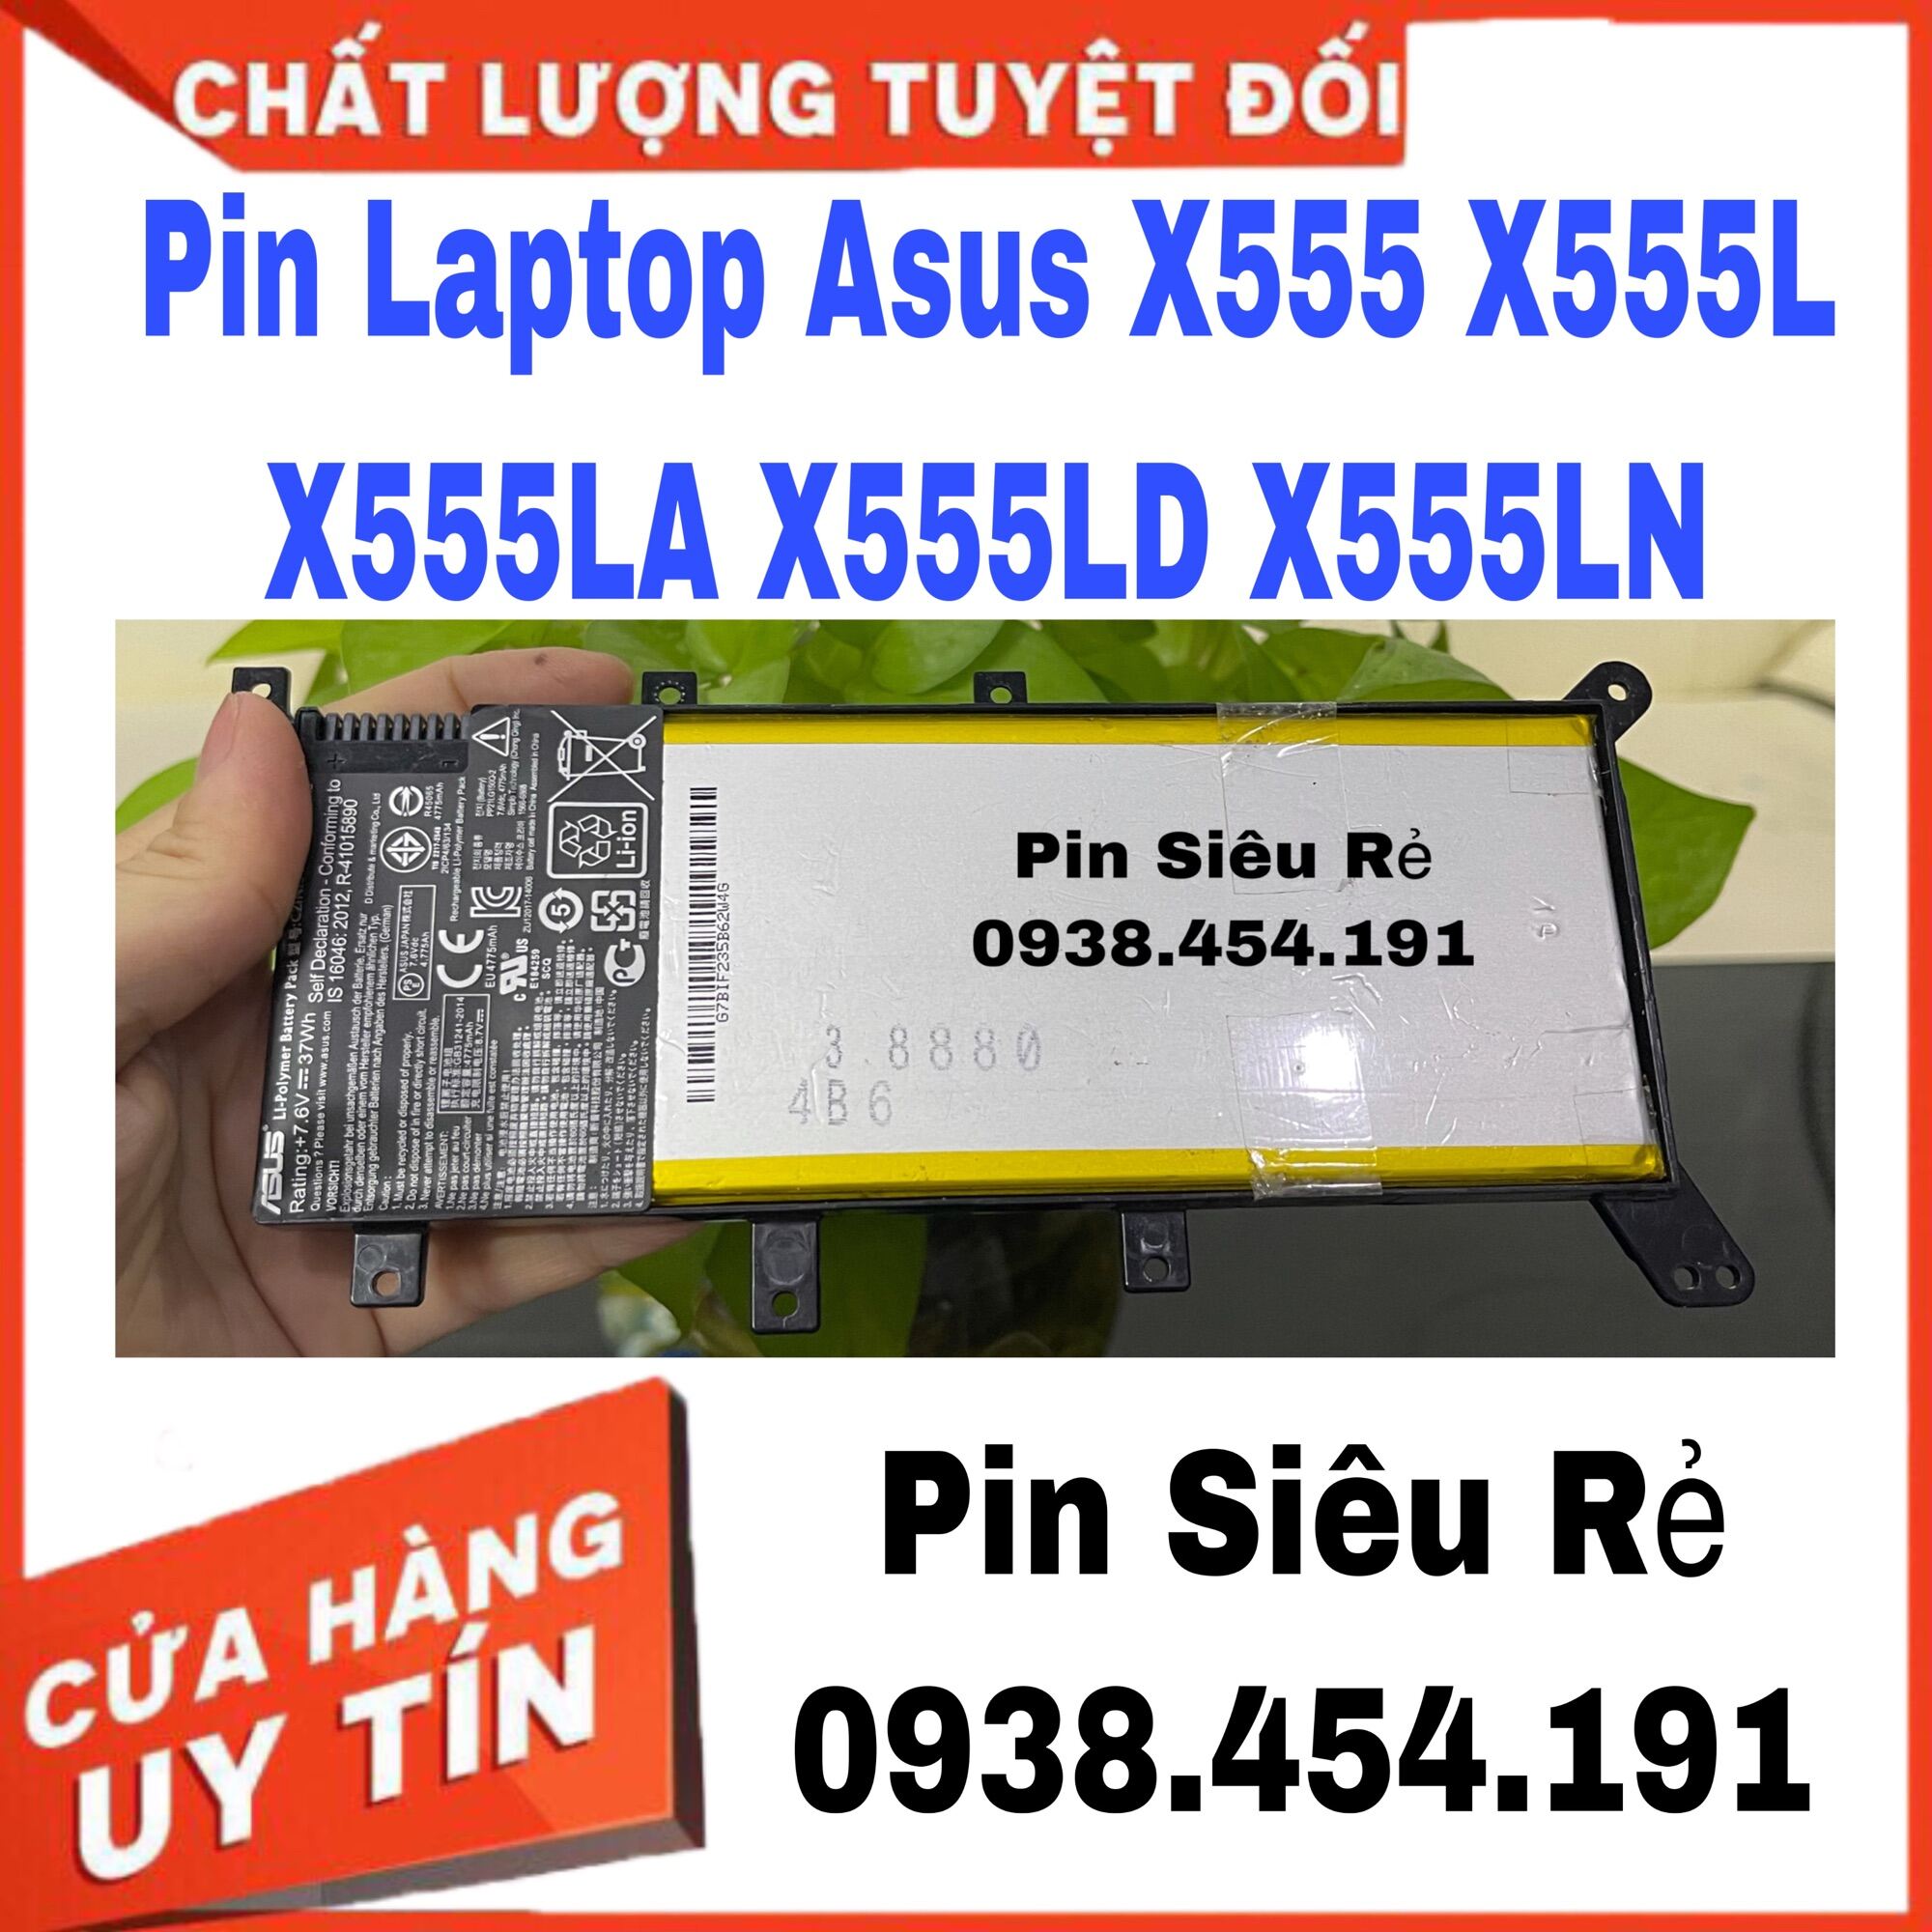 HCMPin Laptop Asus X555 X555L X555LA X555LD X555LN thumbnail